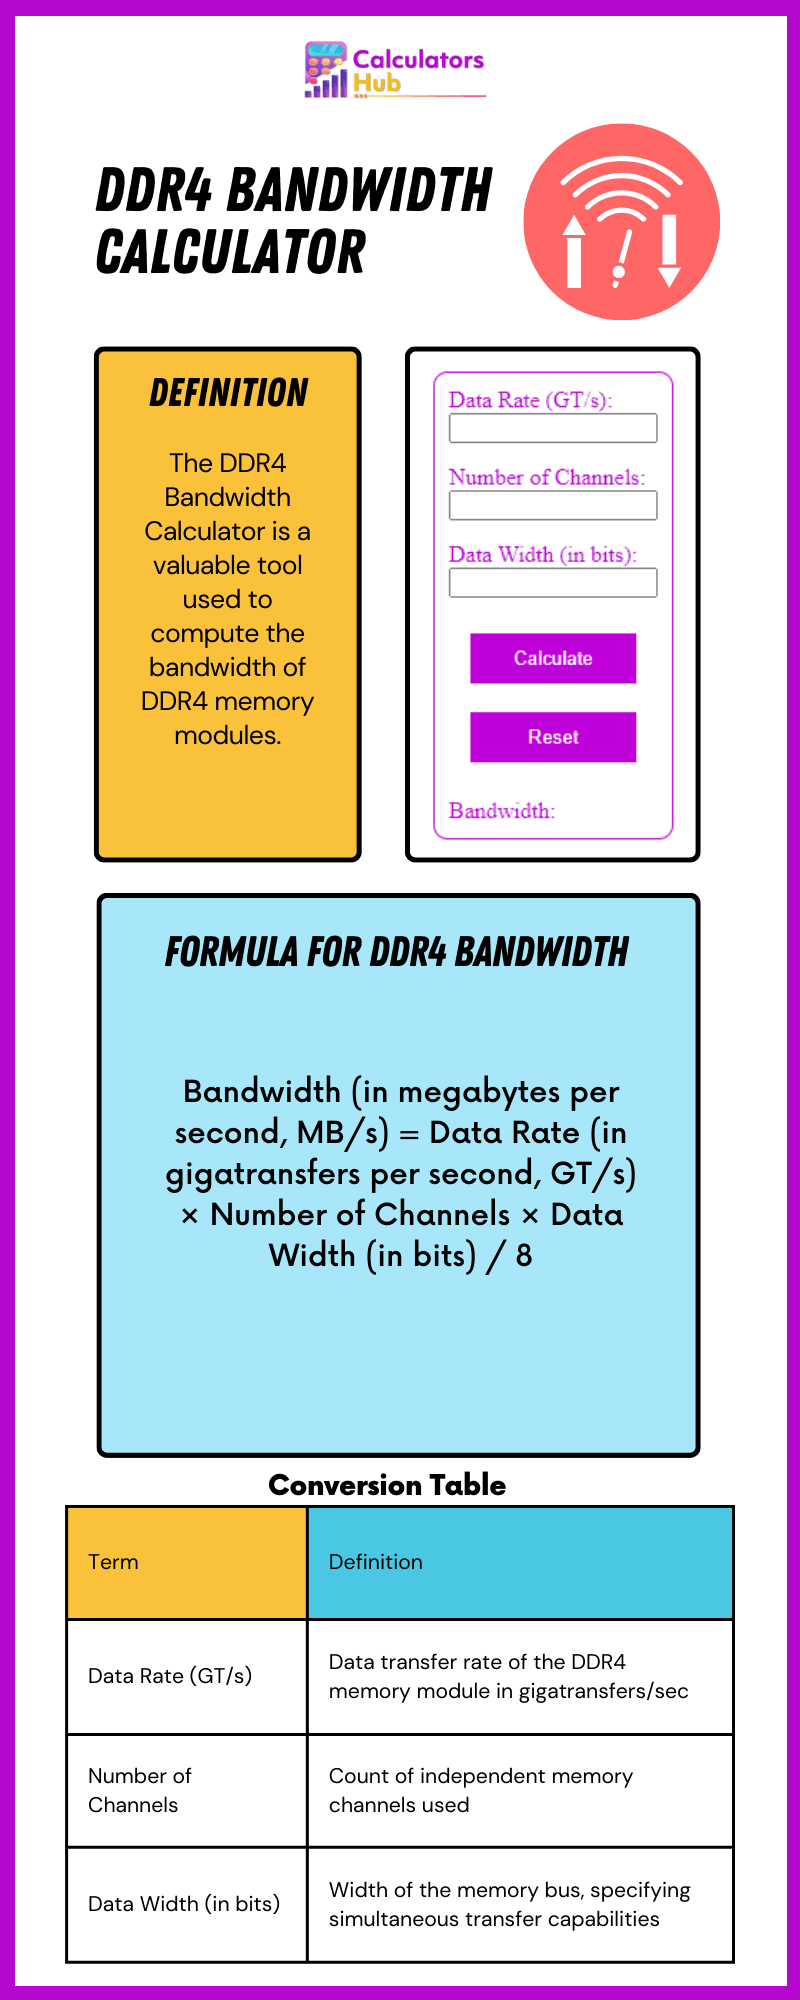 DDR4 Bandwidth Calculator